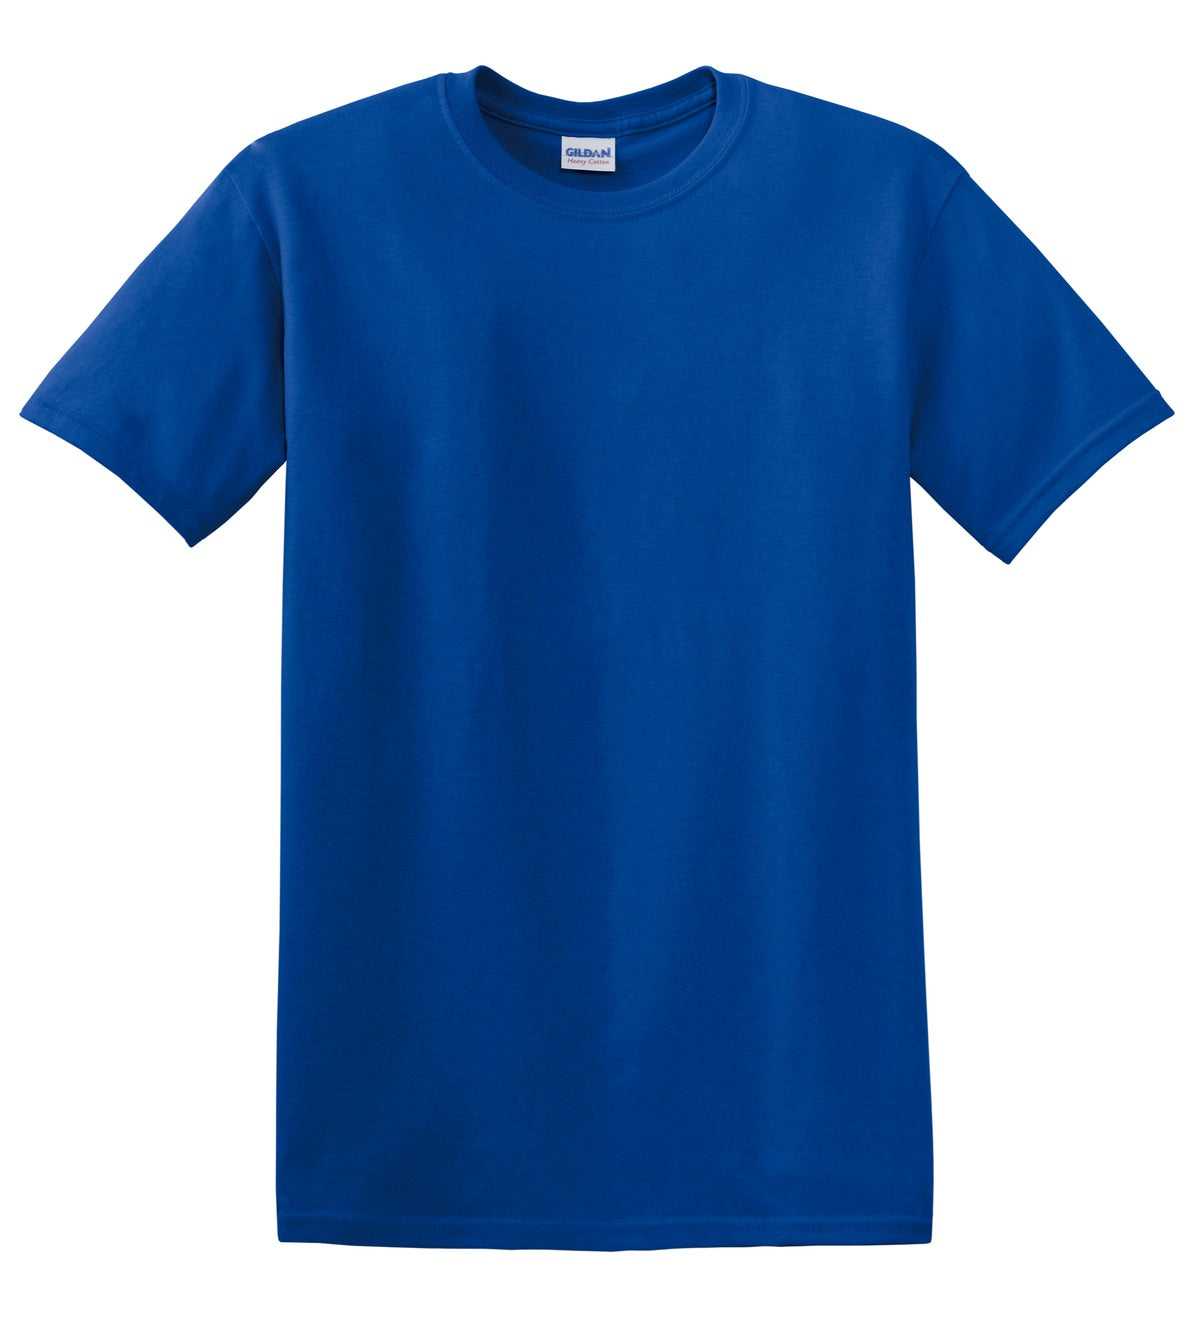 Gildan 5000 Heavy Cotton 100% Cotton T-Shirt - Royal - HIT a Double